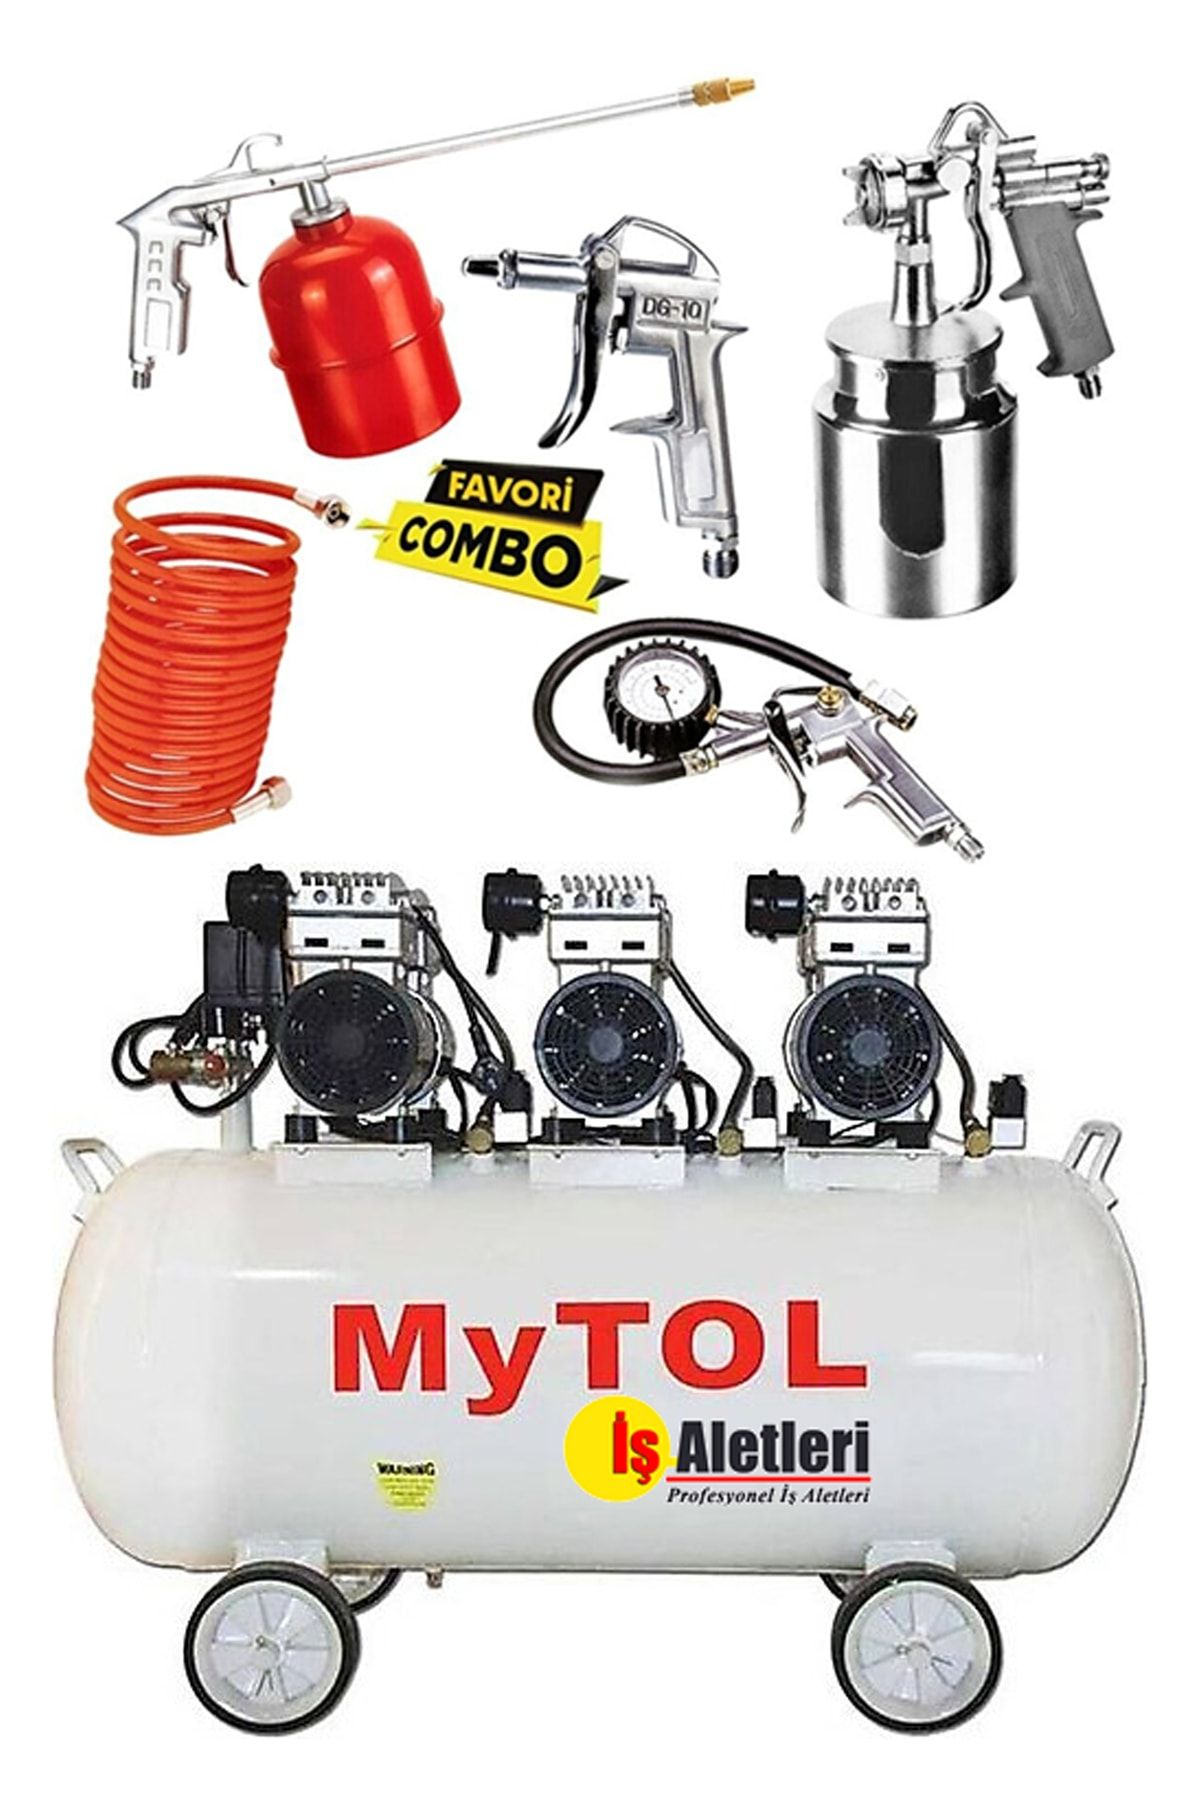 MYTOL 100 Litre Sessiz Yağsız Hava Kompresörü 3,3 Hp Medikal Yağsız Kompresör Ve Havalı Alet Seti